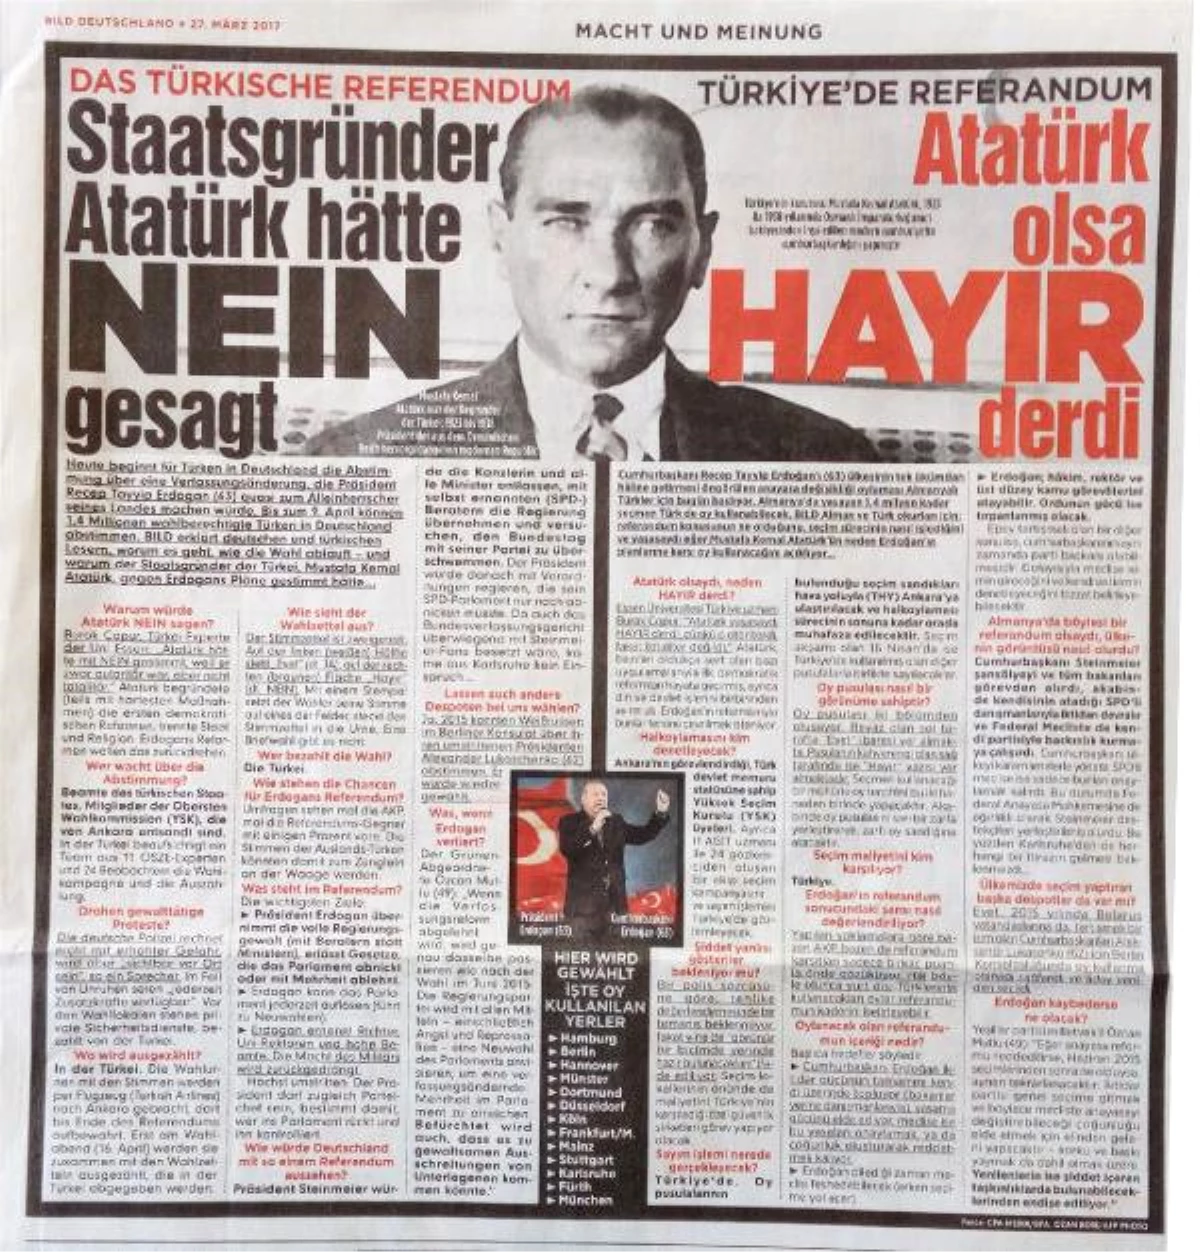 Bild: Atatürk Olsa "Hayır" Derdi